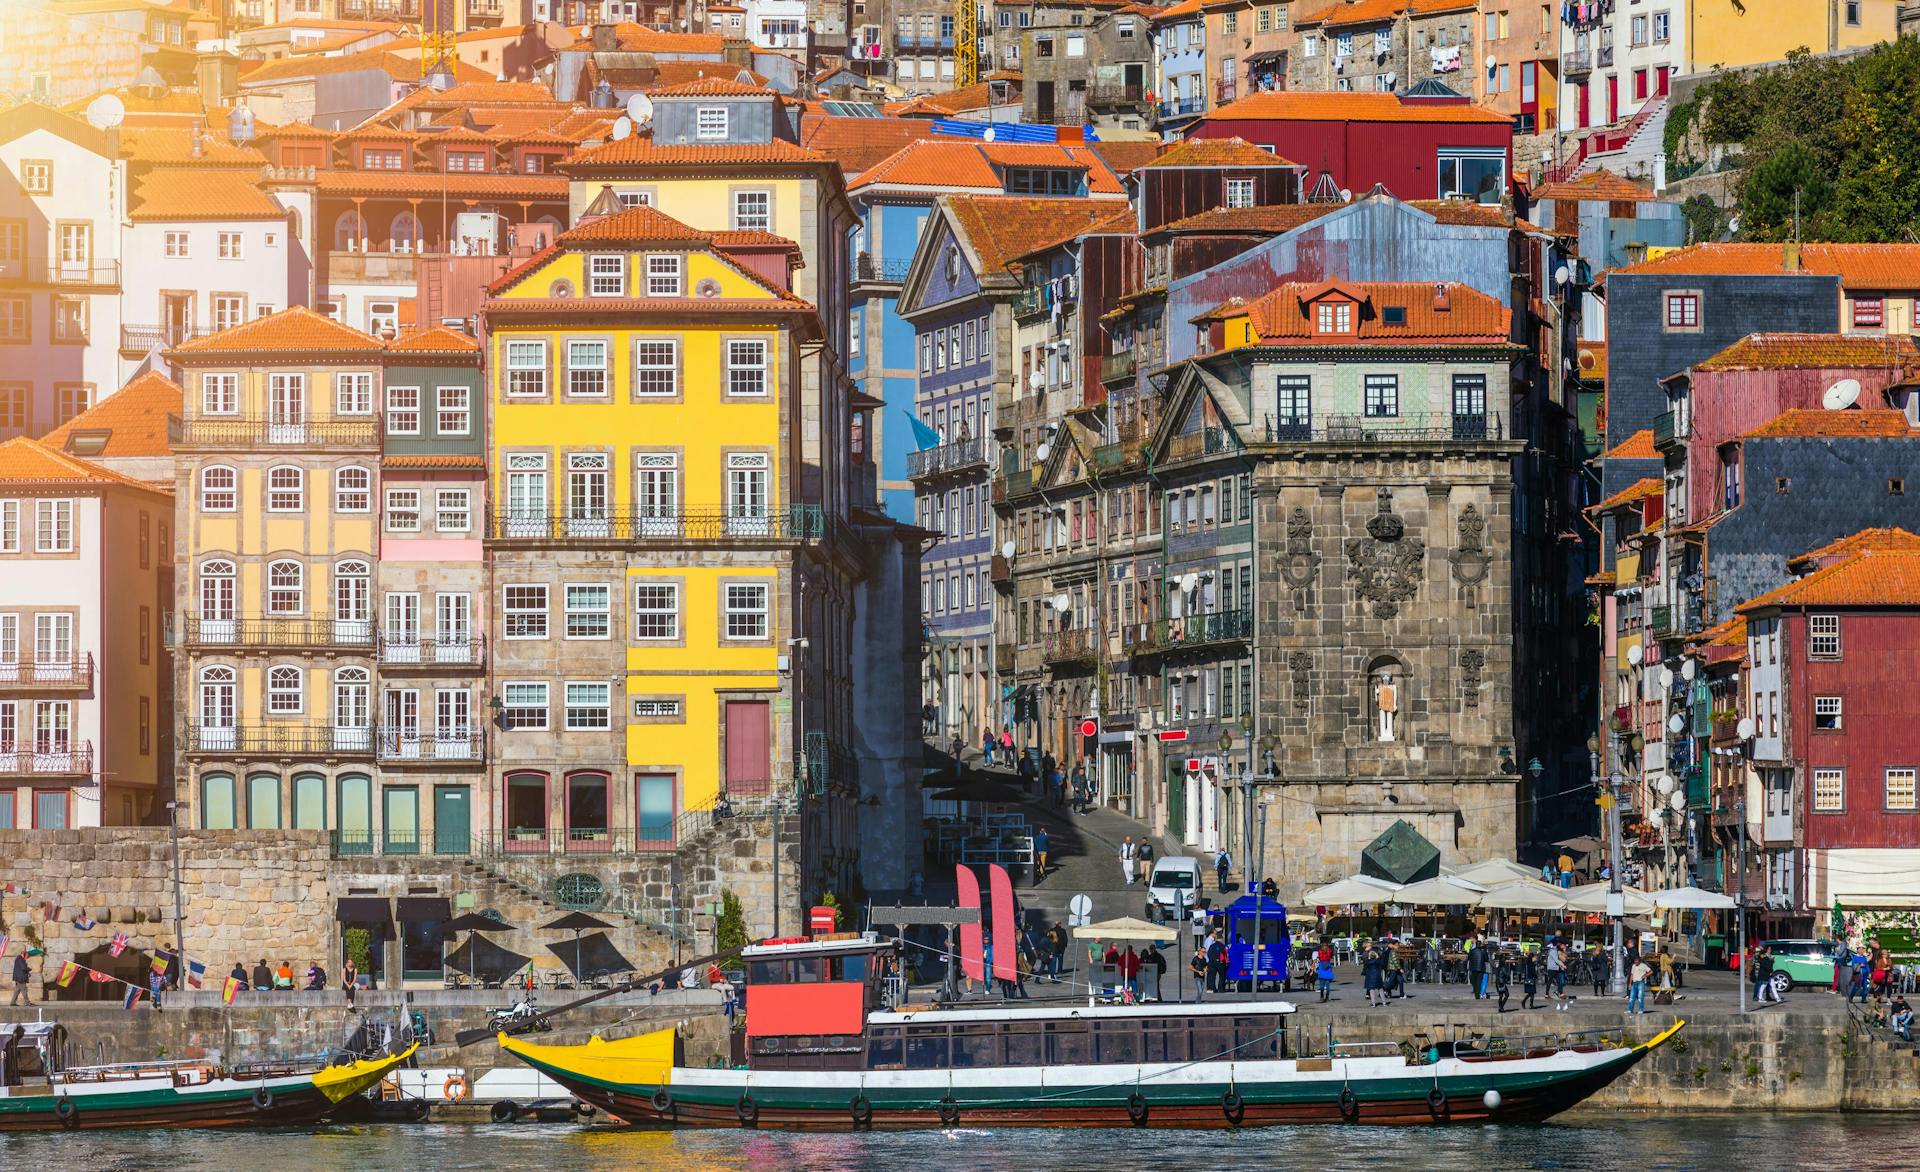 A scenic view of the Porto Old Town pier architecture over Duero river in Porto, Portugal.